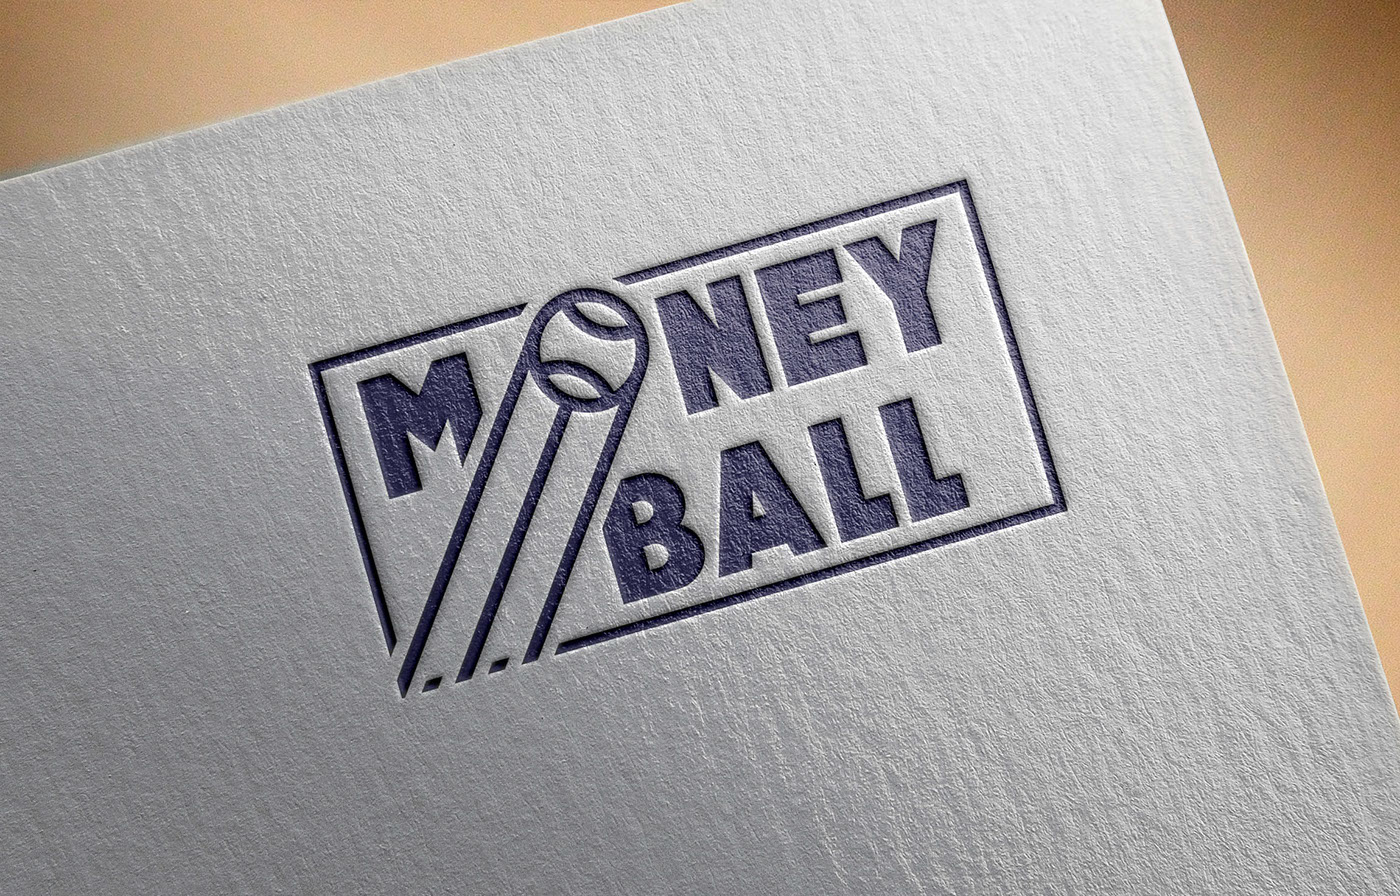 logo ball money sport fan service luck